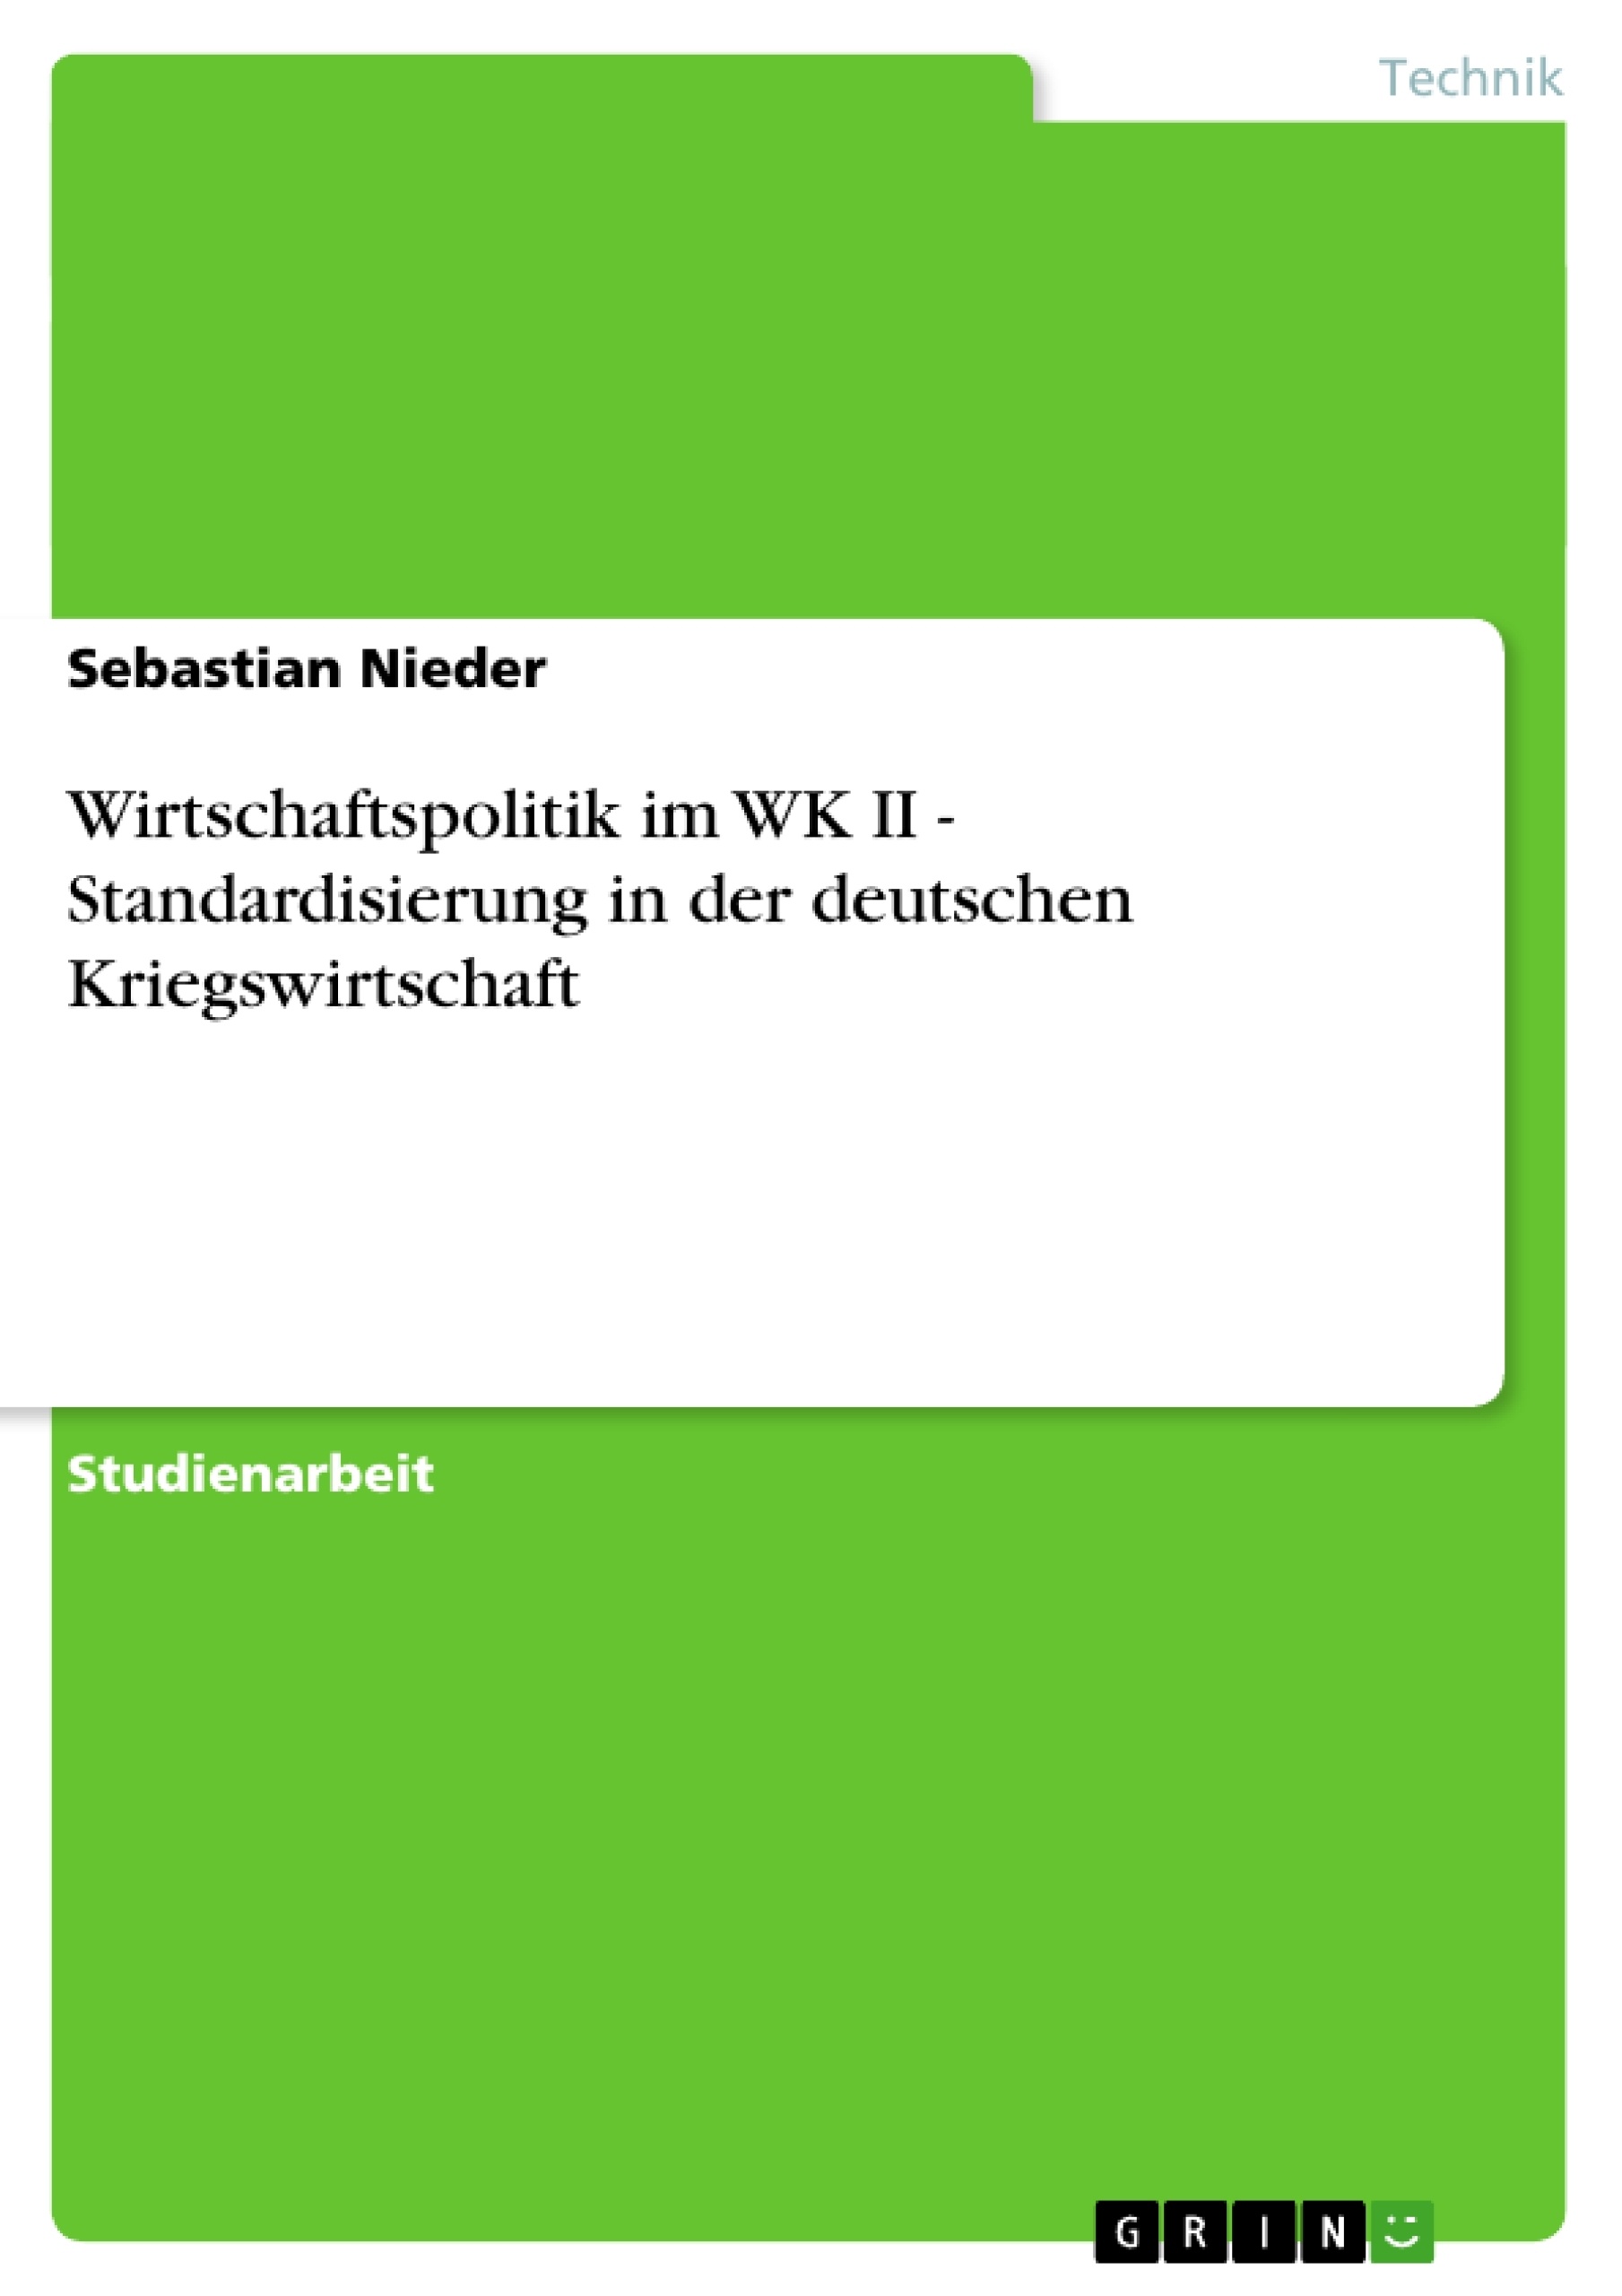 Título: Wirtschaftspolitik im WK II - Standardisierung in der deutschen Kriegswirtschaft